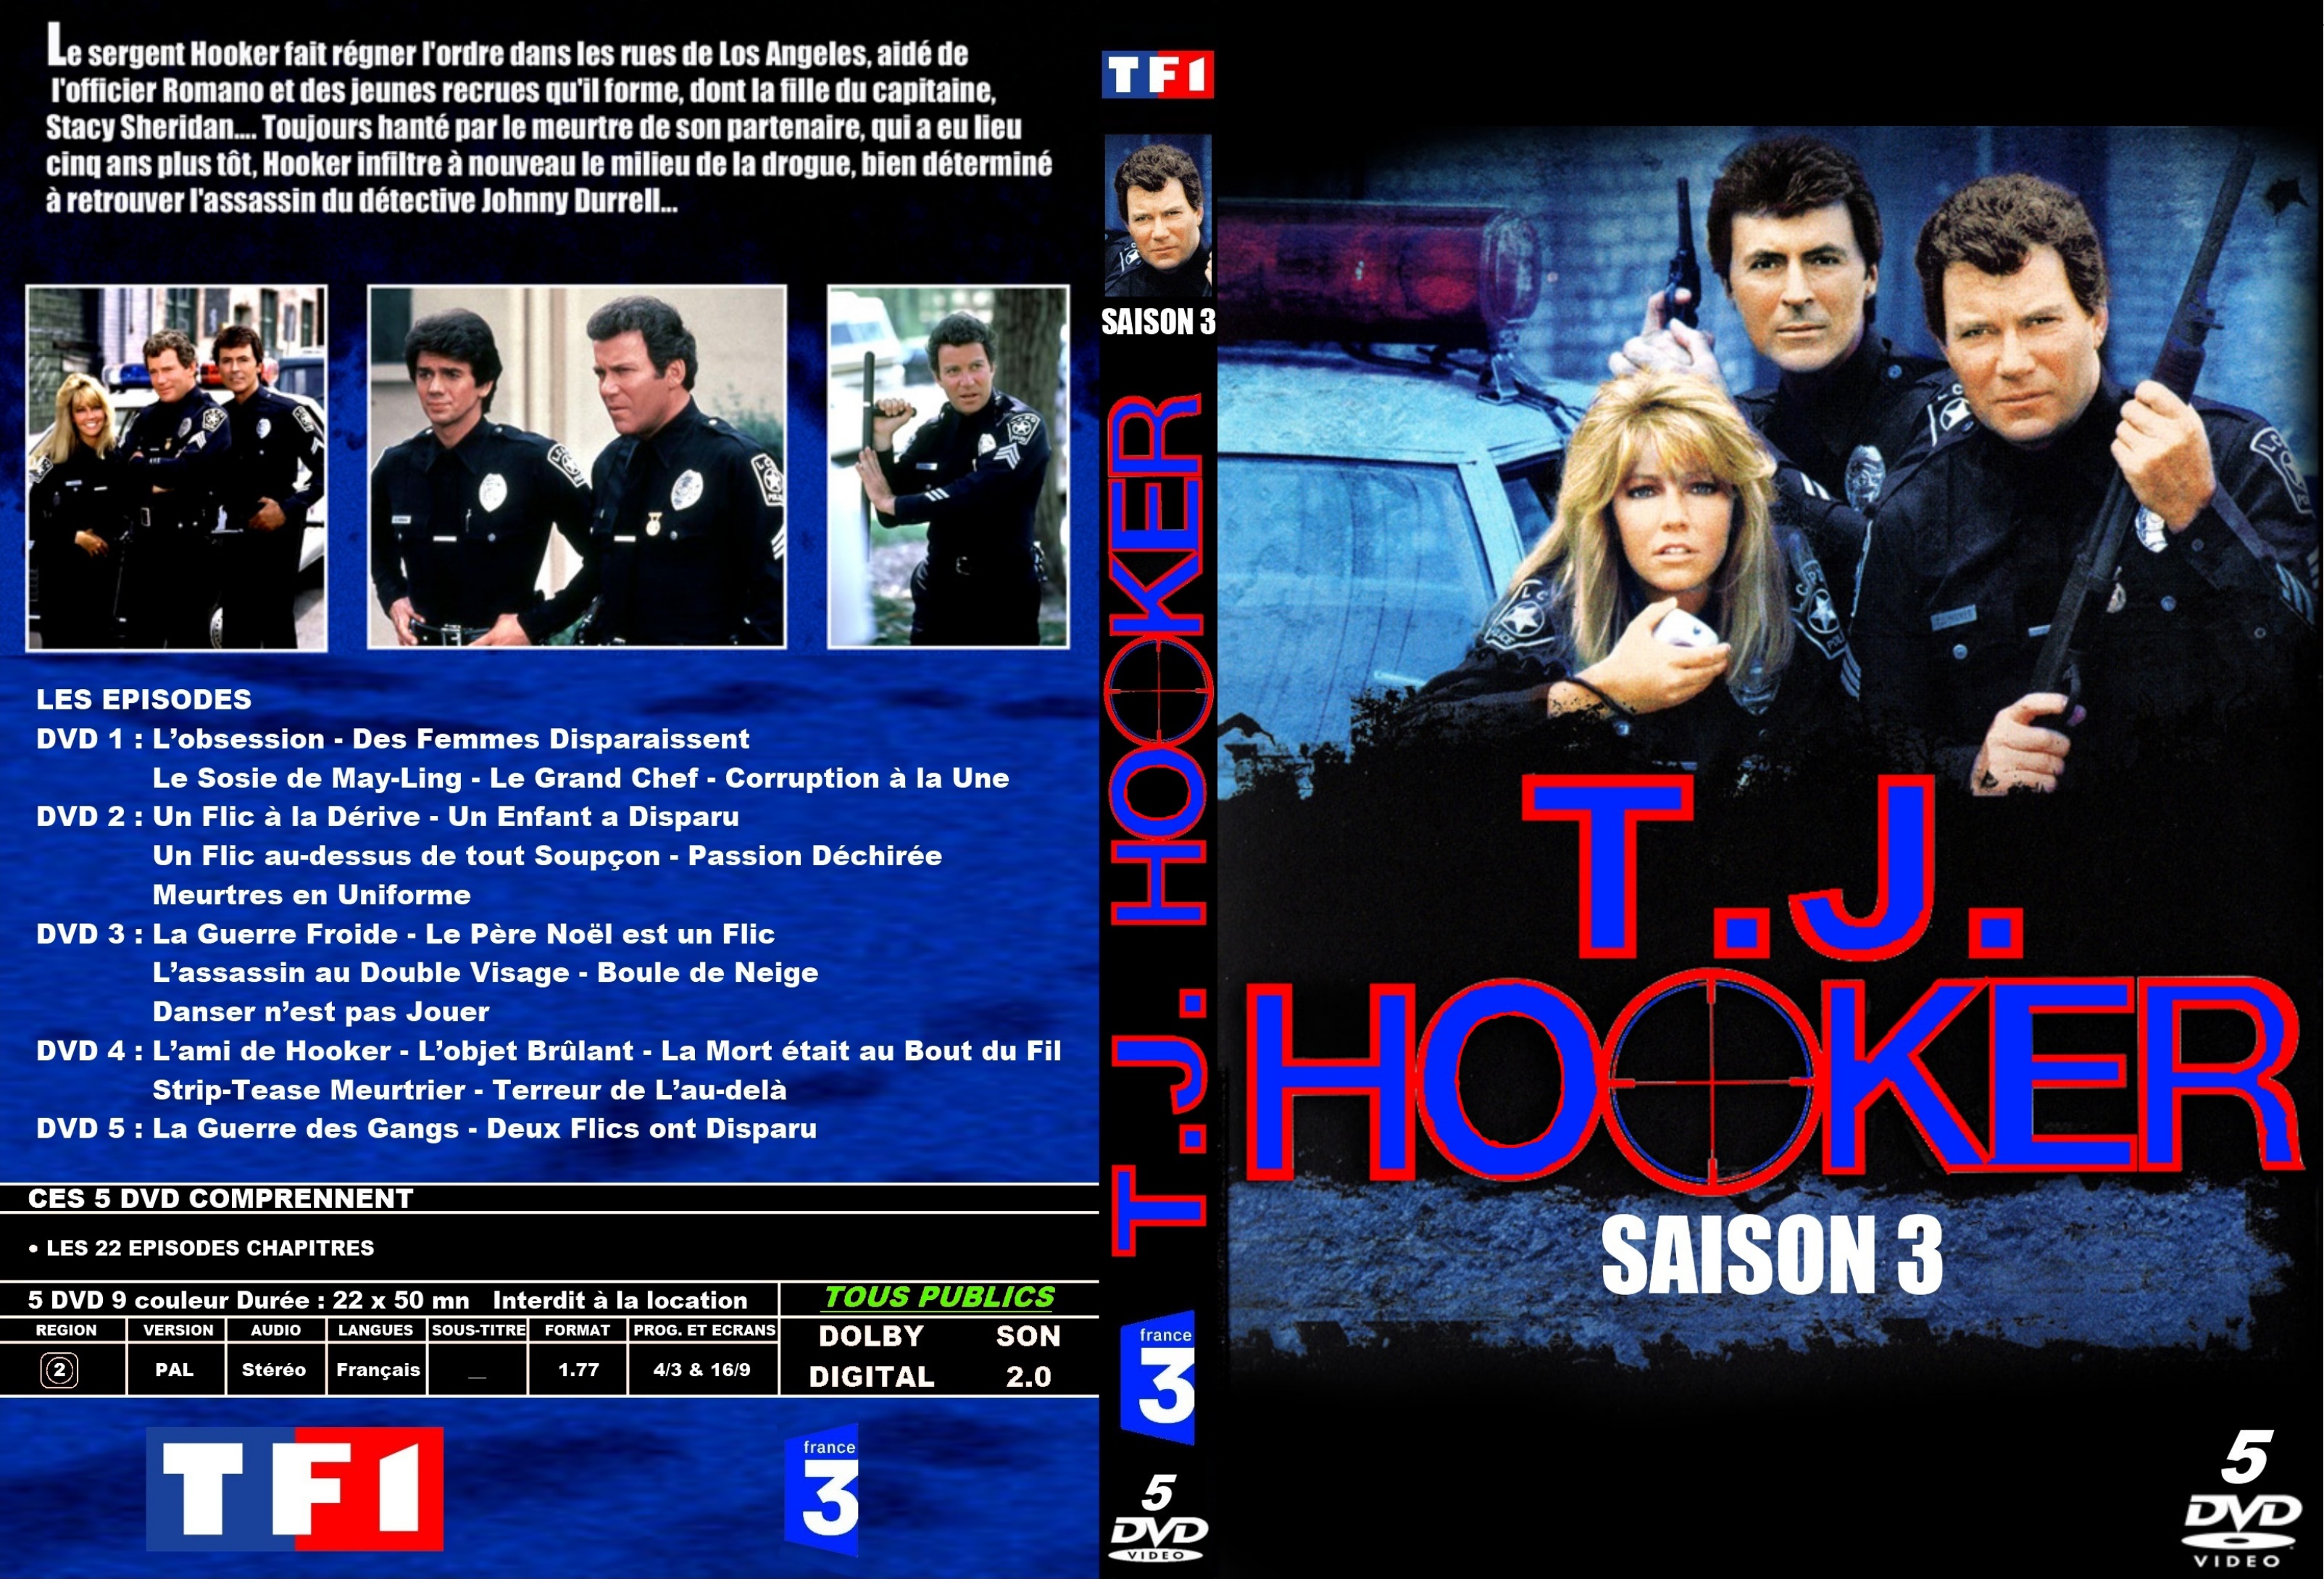 Jaquette DVD Hooker Saison 3 custom